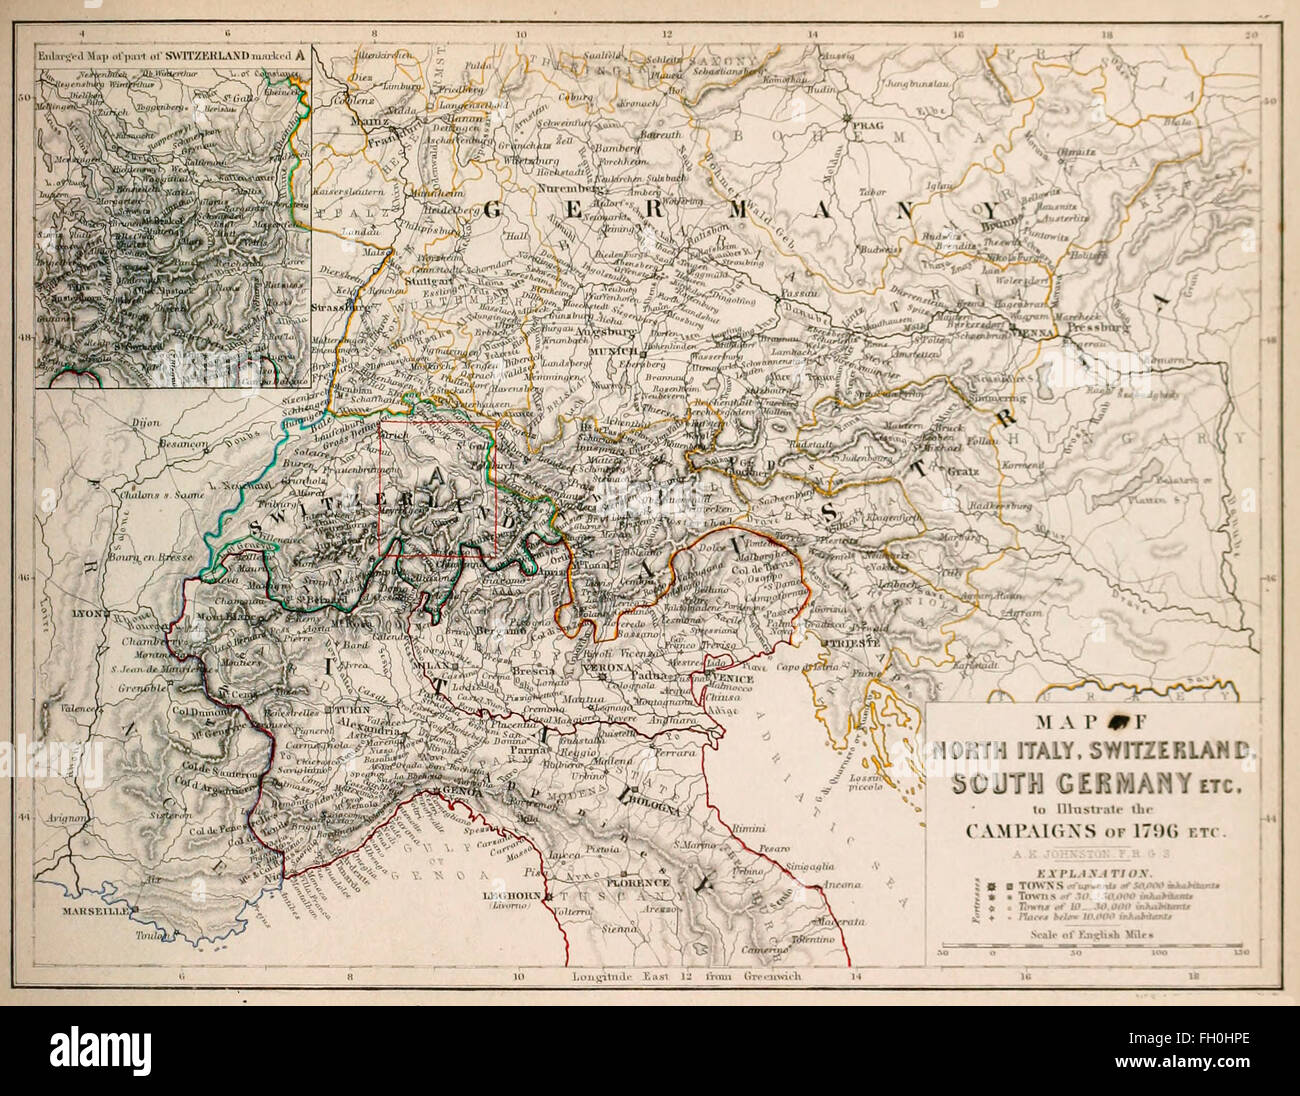 Carte de l'Italie, la Suisse, l'Allemagne, etc. pour illustrer les campagnes de 1796 Banque D'Images